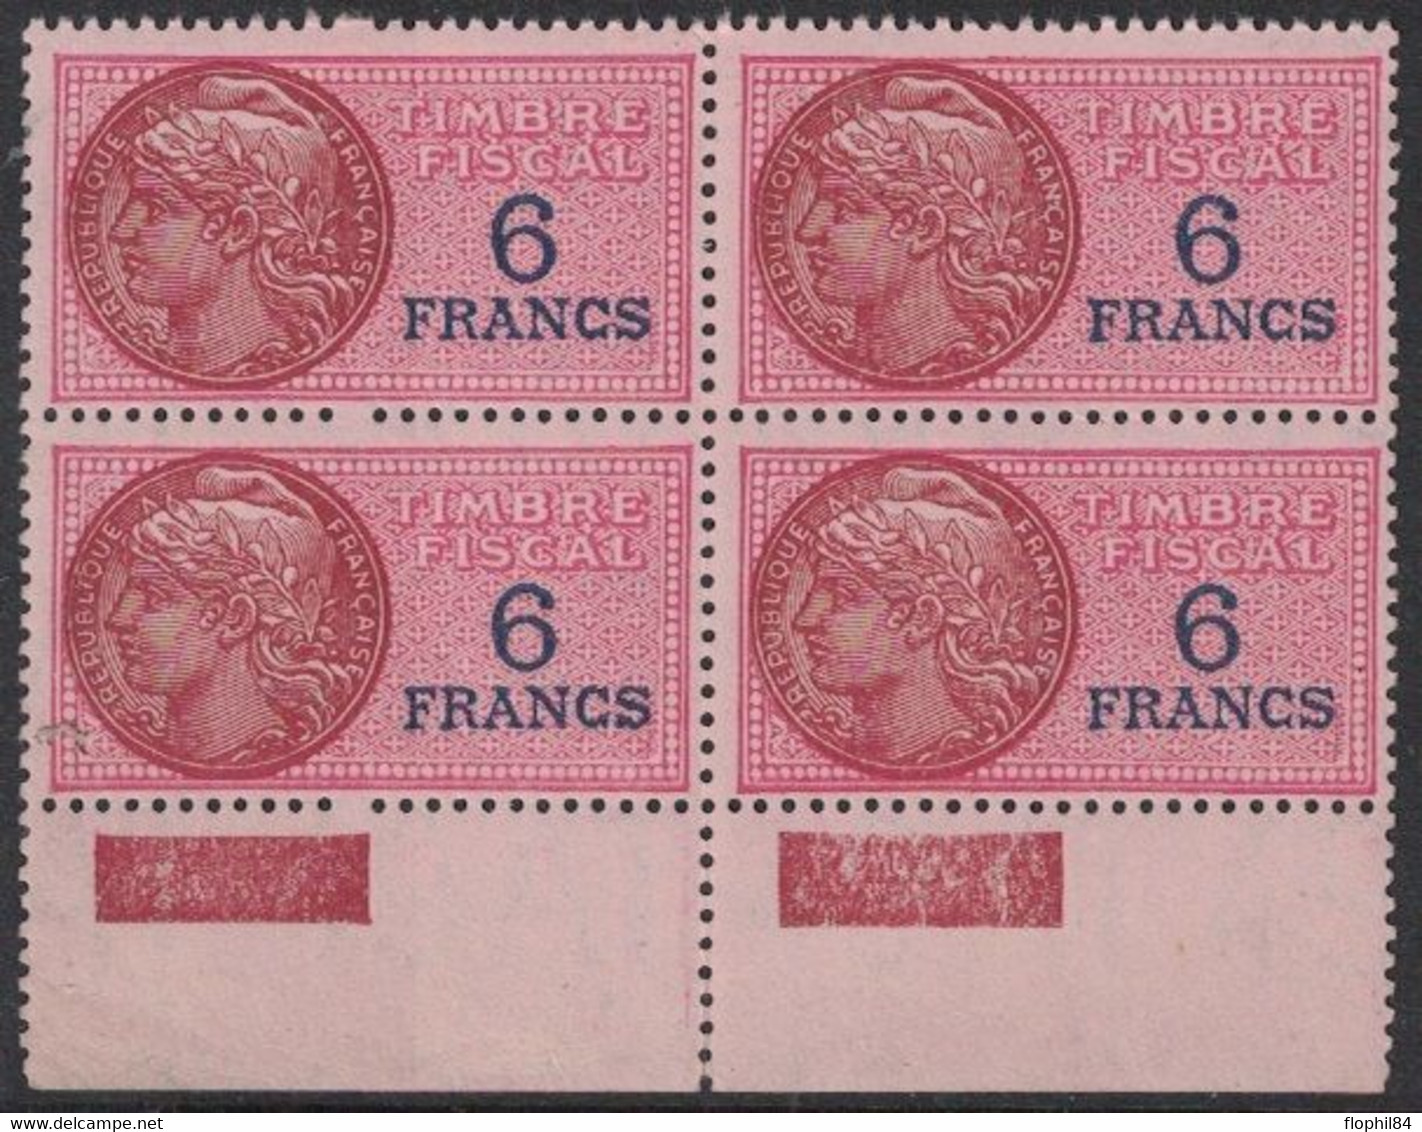 TIMBRE MOBILE - FISCAUX GENERAUX - N°138 - BLOC DE 4 NEUF AVEC GOMME SANS TRACE - COTE 20€ - DONT 1 AVEC DATE D'EMISSION - Stamps